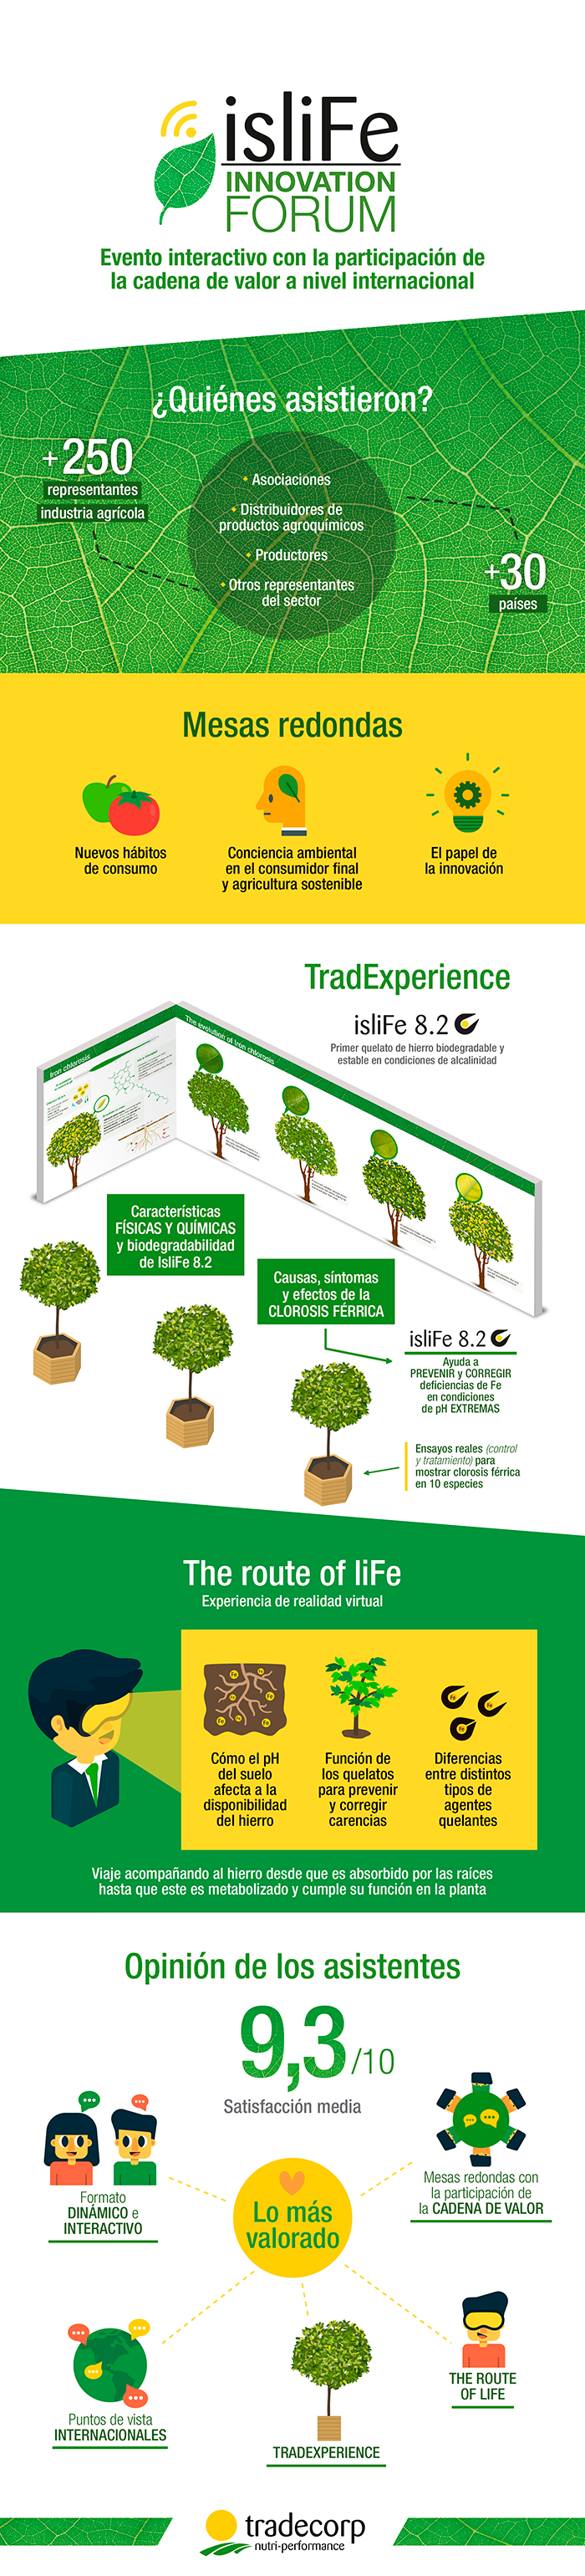 Infografía IsliFe Innovation Forum